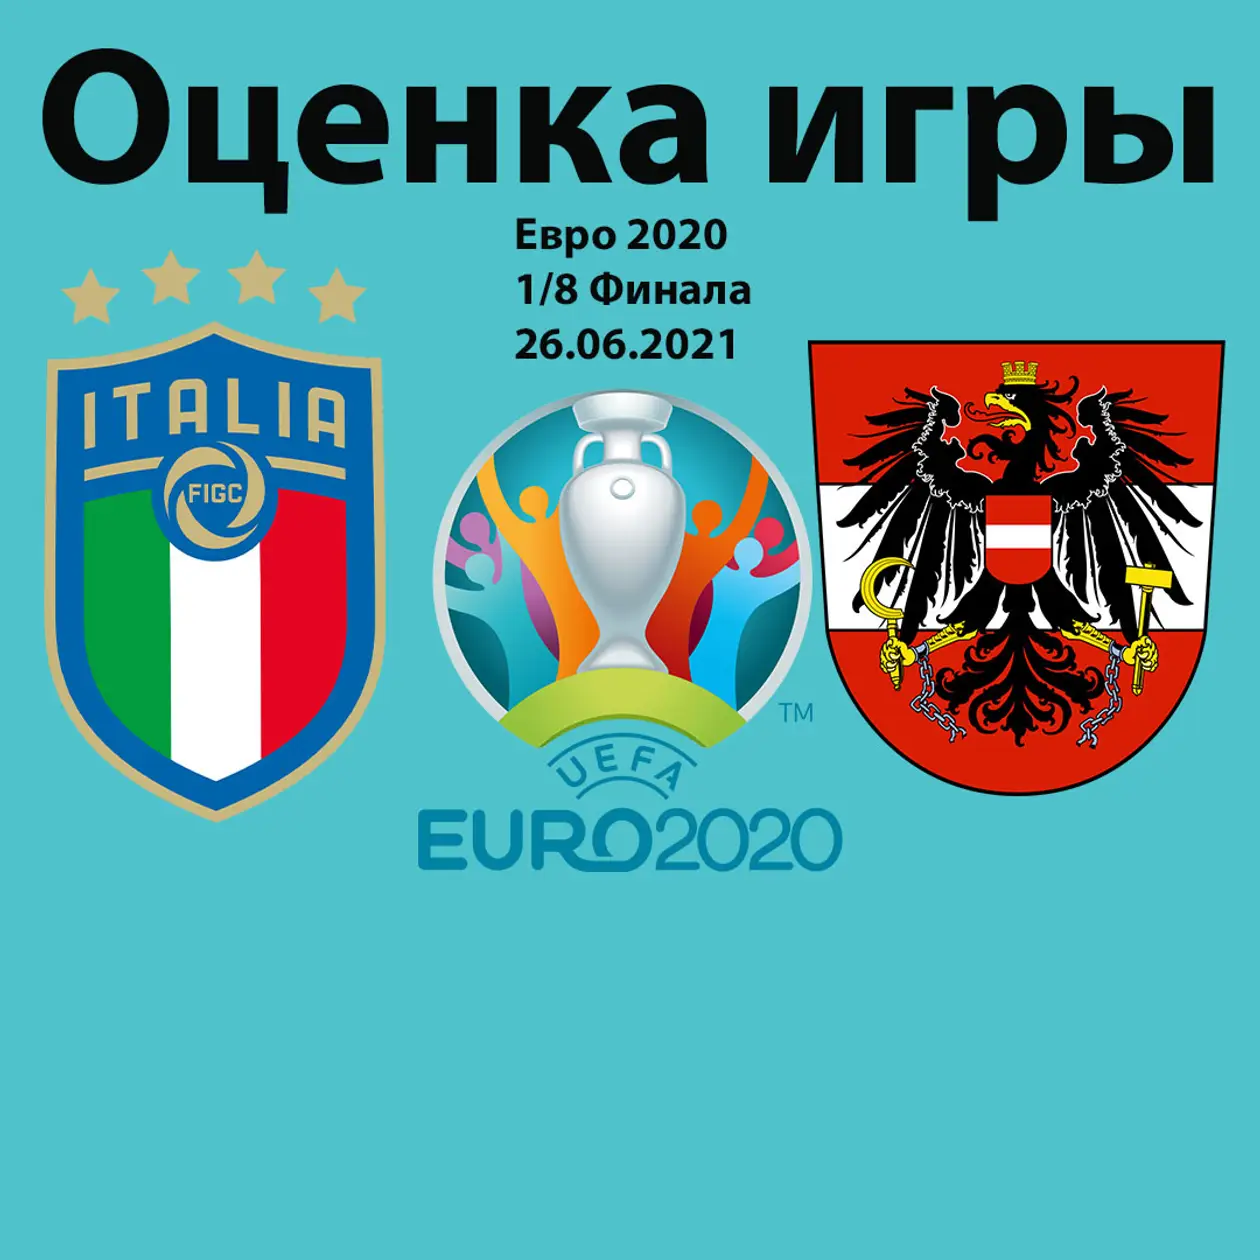 Оцінка гри: Італія-Австрія; Уельс-Данія (Євро 2020 1/8 фіналу)